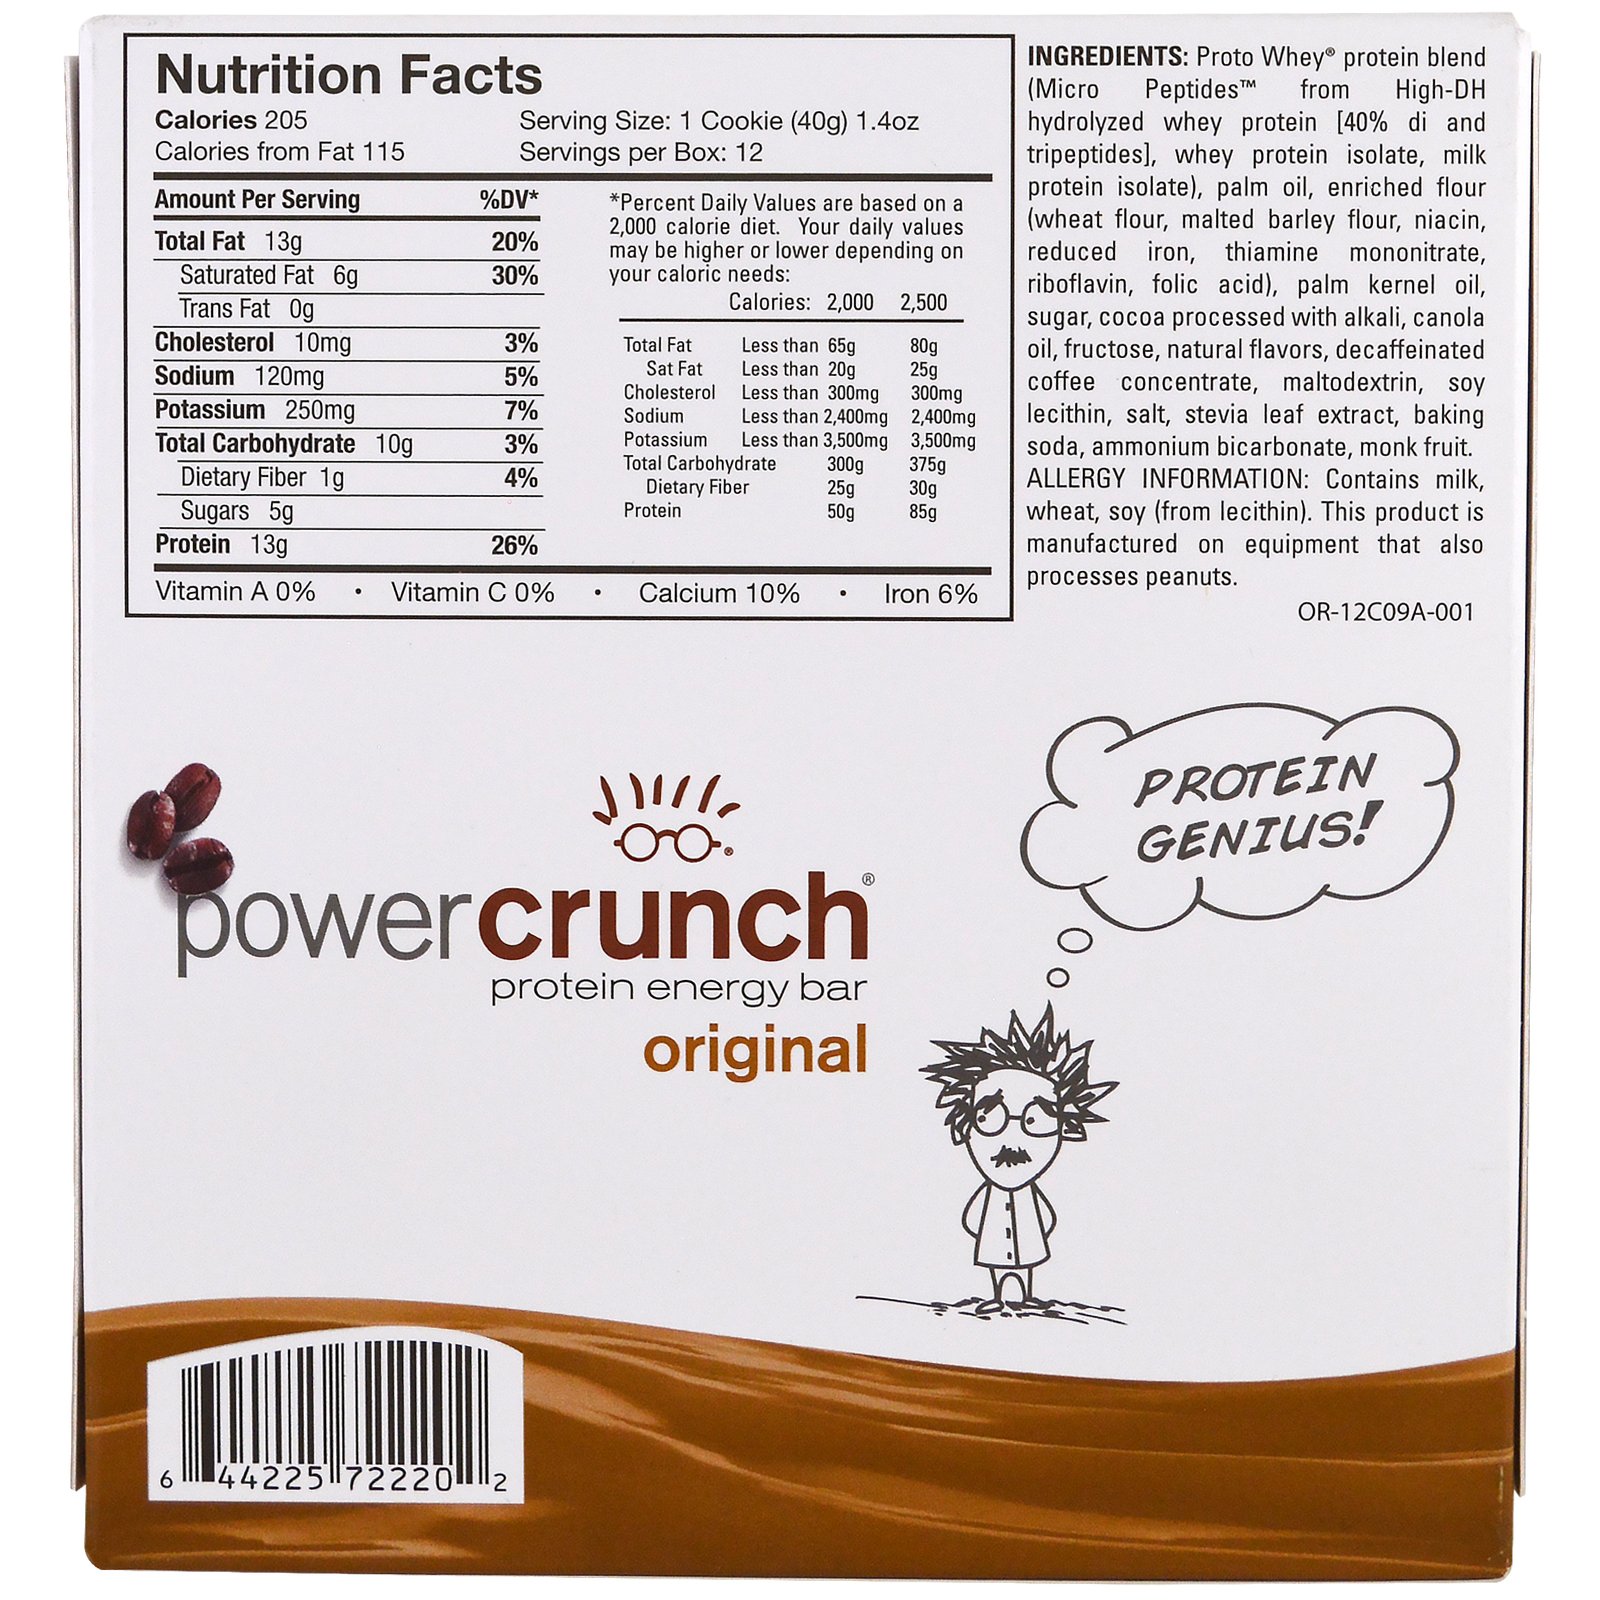 power crunch bar nutrition